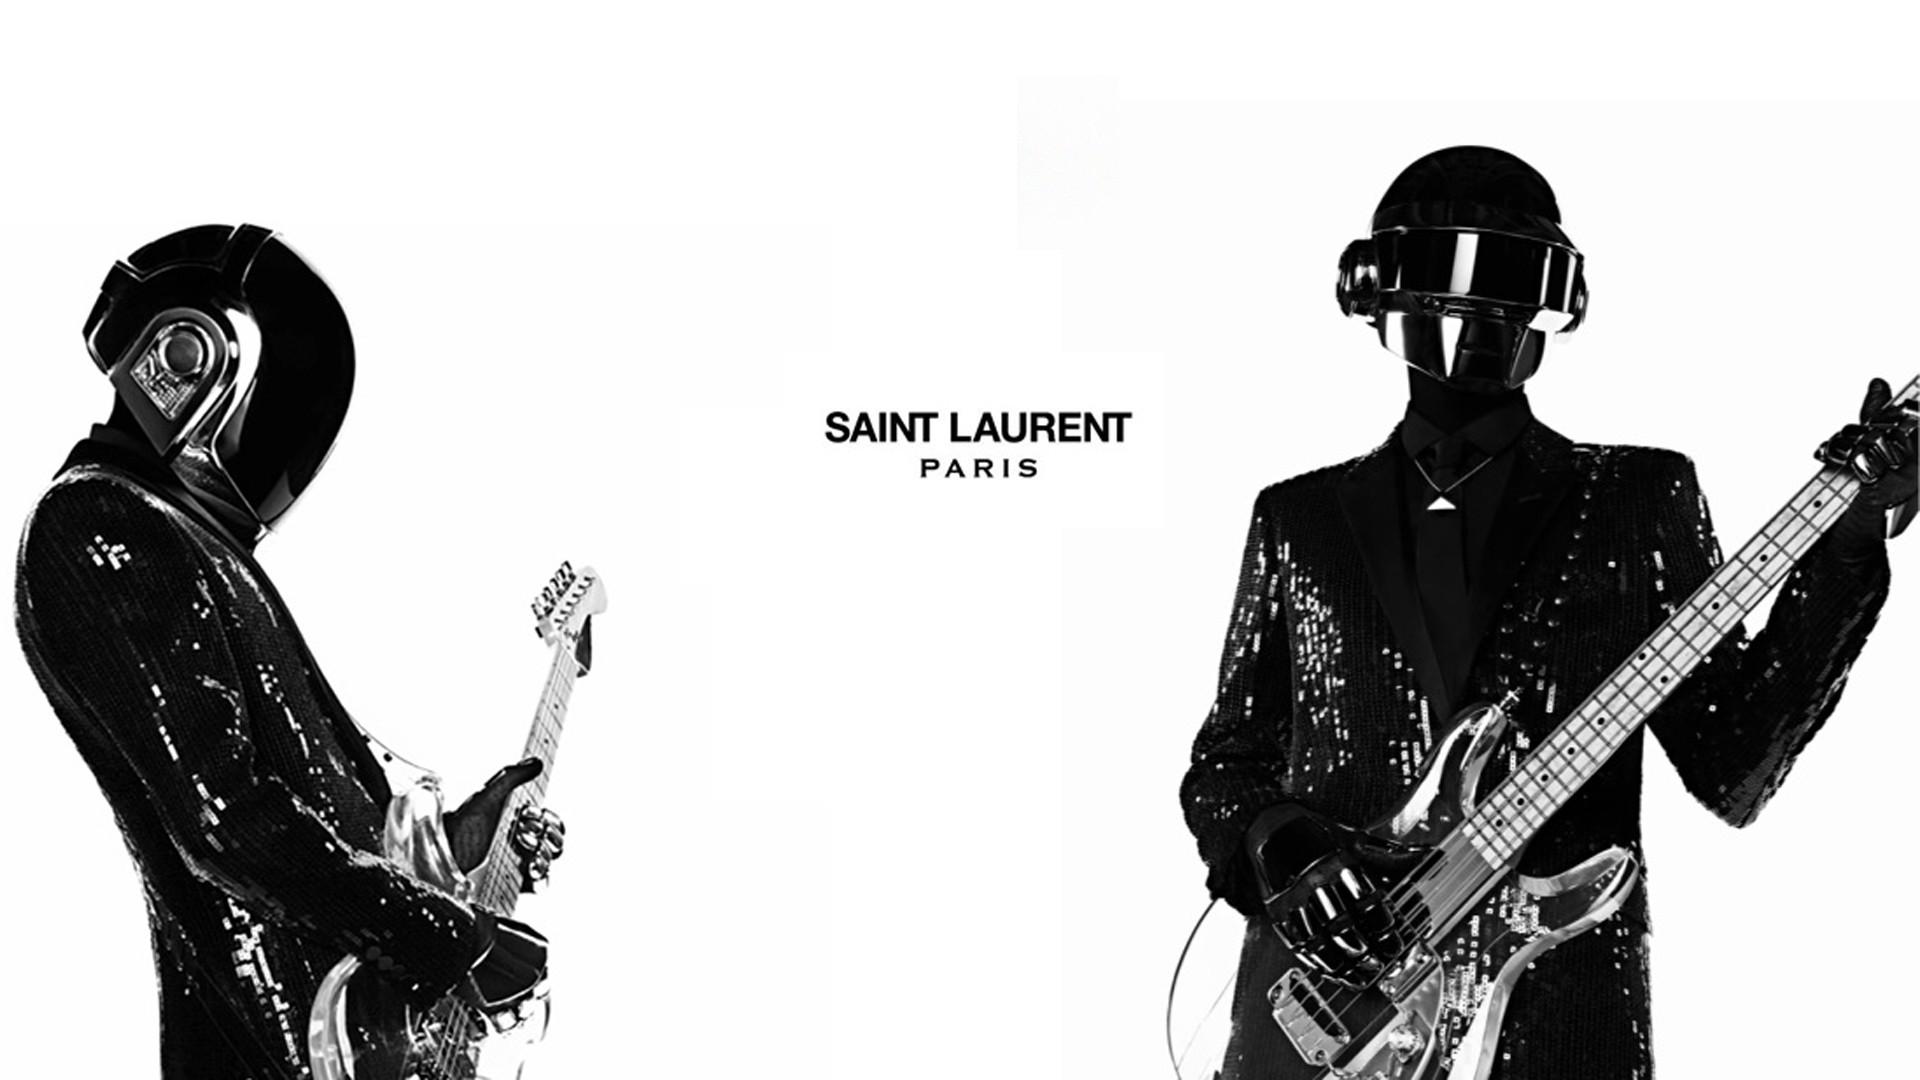 White Daft Punk Guitars Yves Saint Laurent Wallpaper 126204